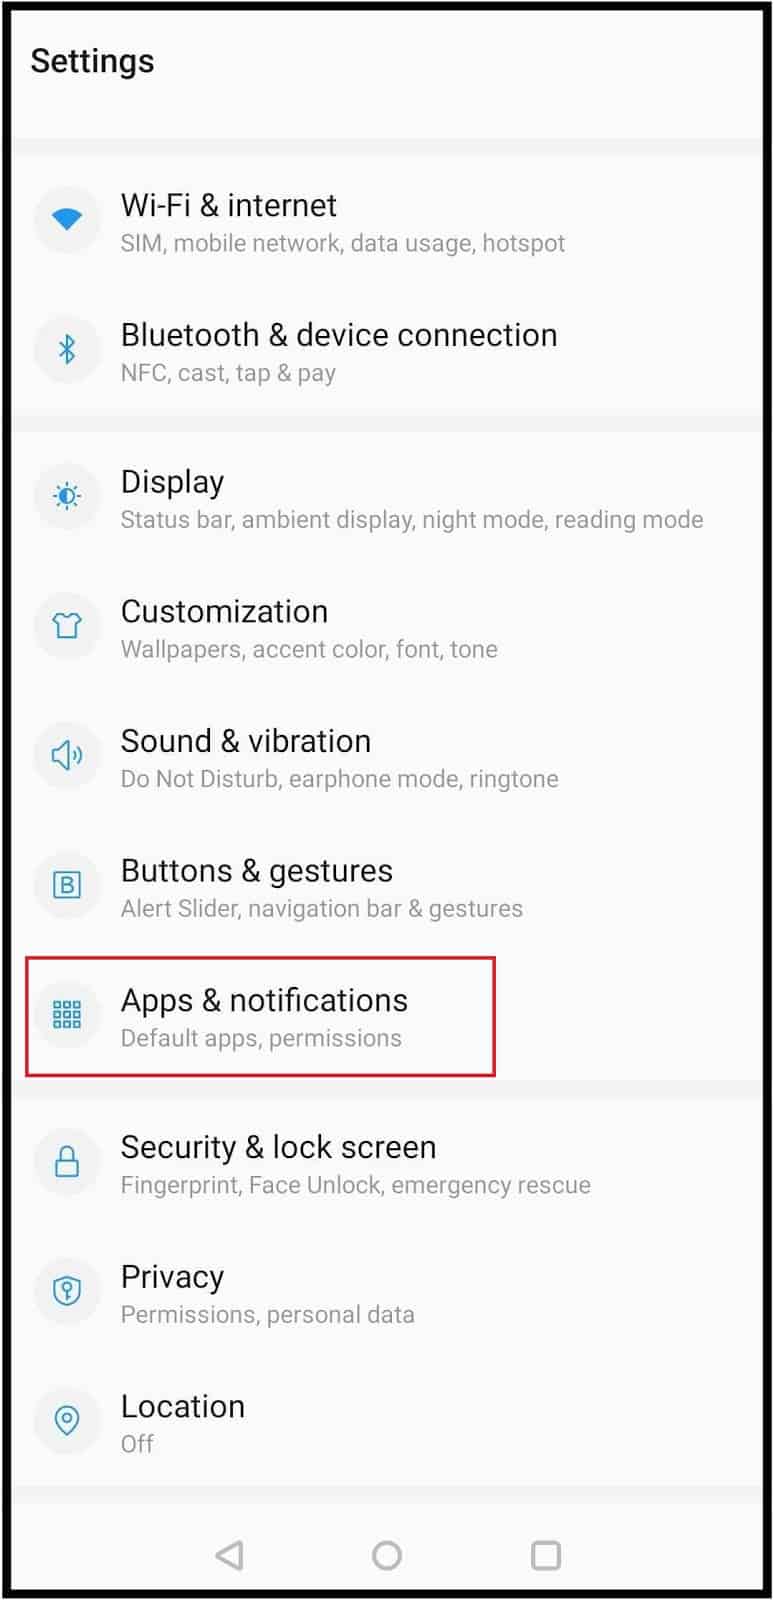 Open Apps & Notifications settings